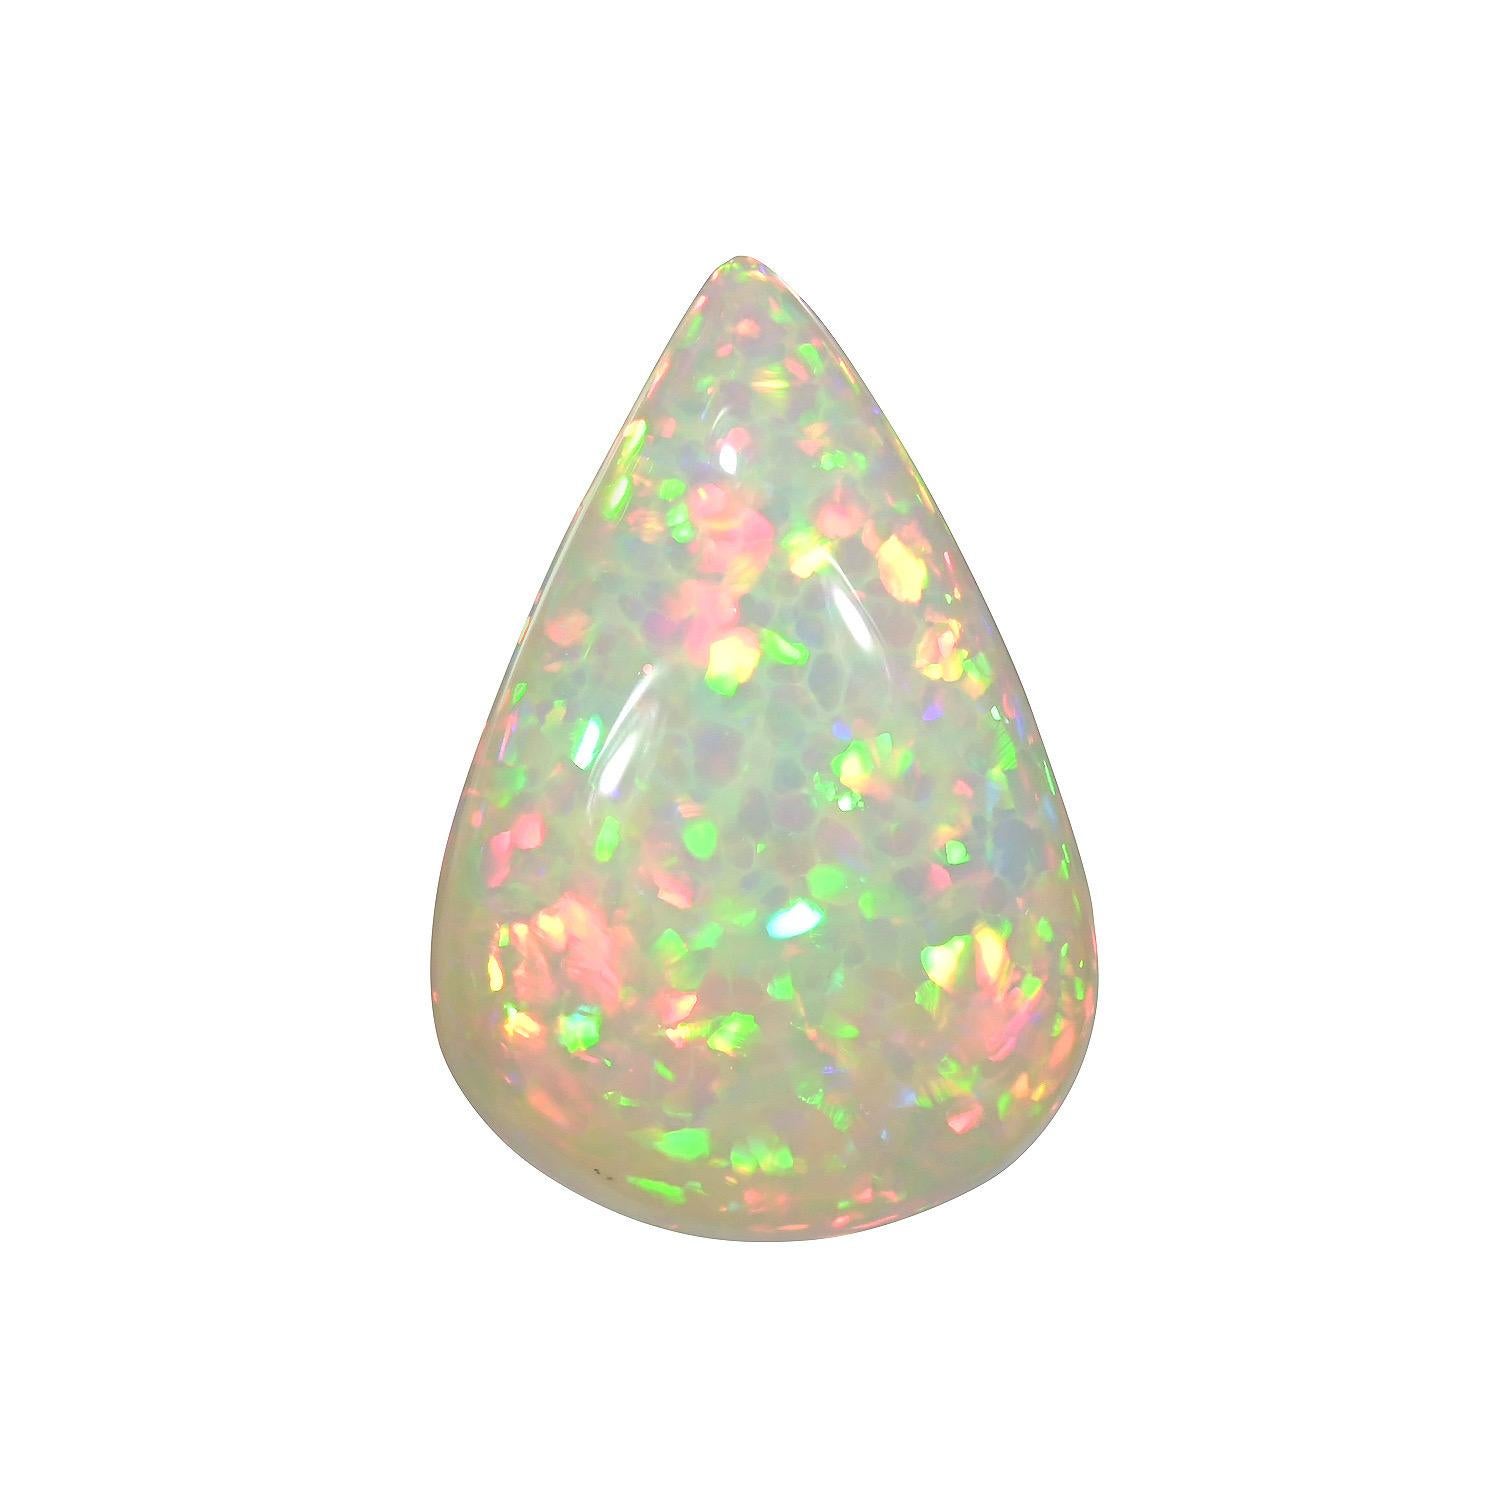 Natürlicher 10,37 Karat birnenförmiger äthiopischer Opal als loser Edelstein, der ungefasst an einen einzigartigen Edelsteinliebhaber angeboten wird.
Rücksendungen werden von uns innerhalb von 7 Tagen nach Lieferung angenommen und bezahlt.
Auf